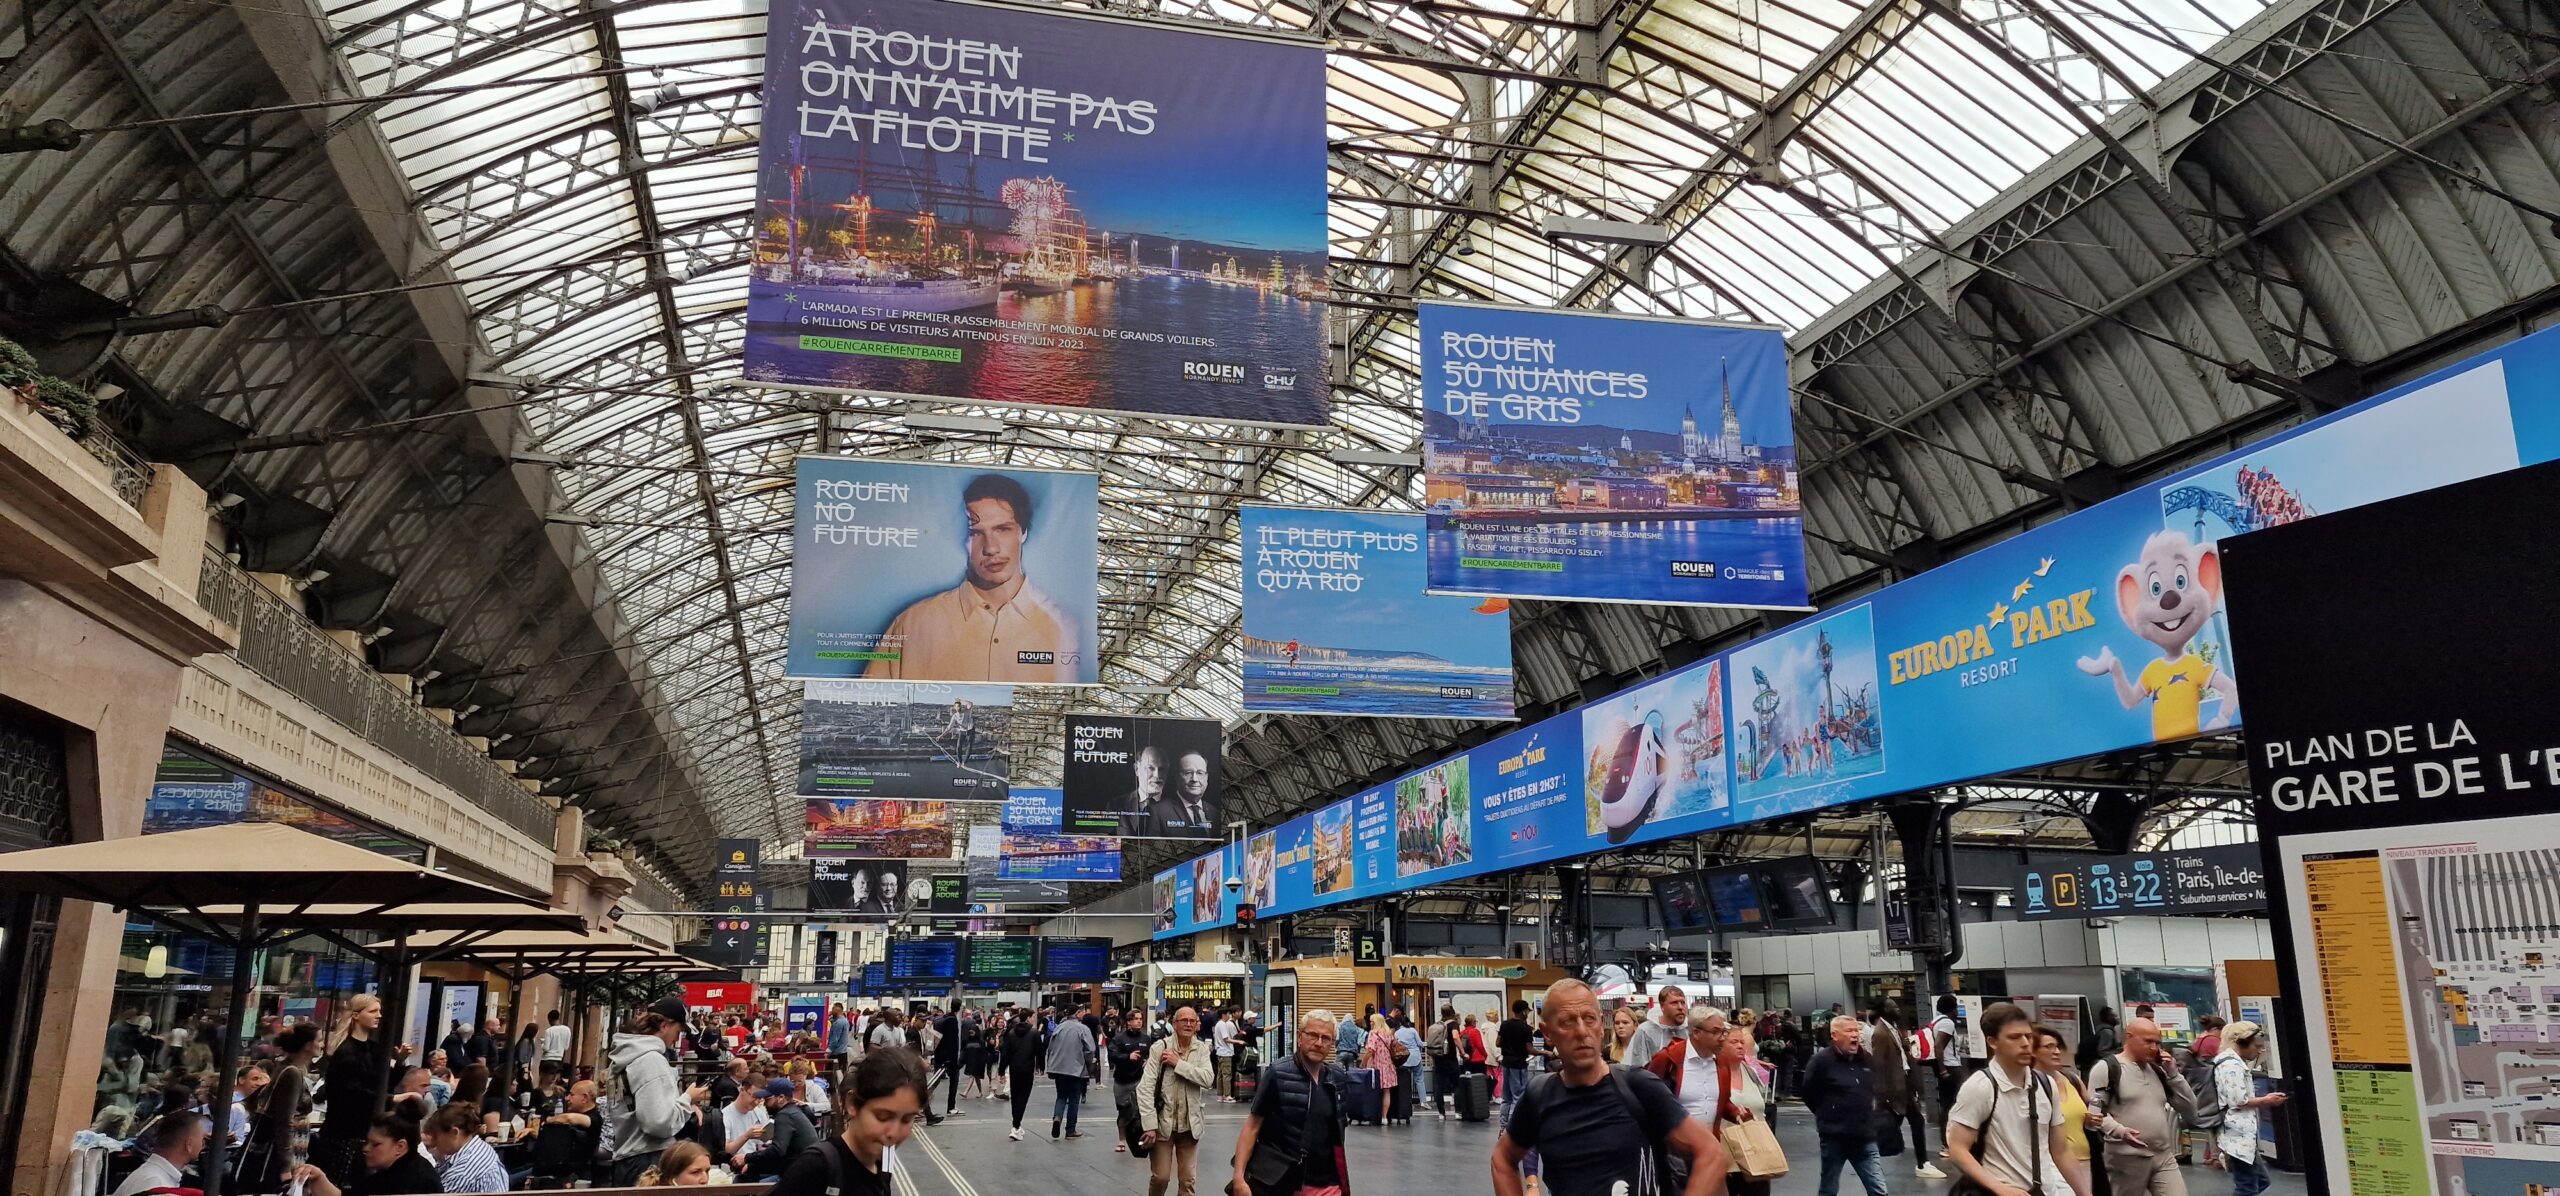 Campagne de communication dans la gare de l'Est à Paris ©RNI